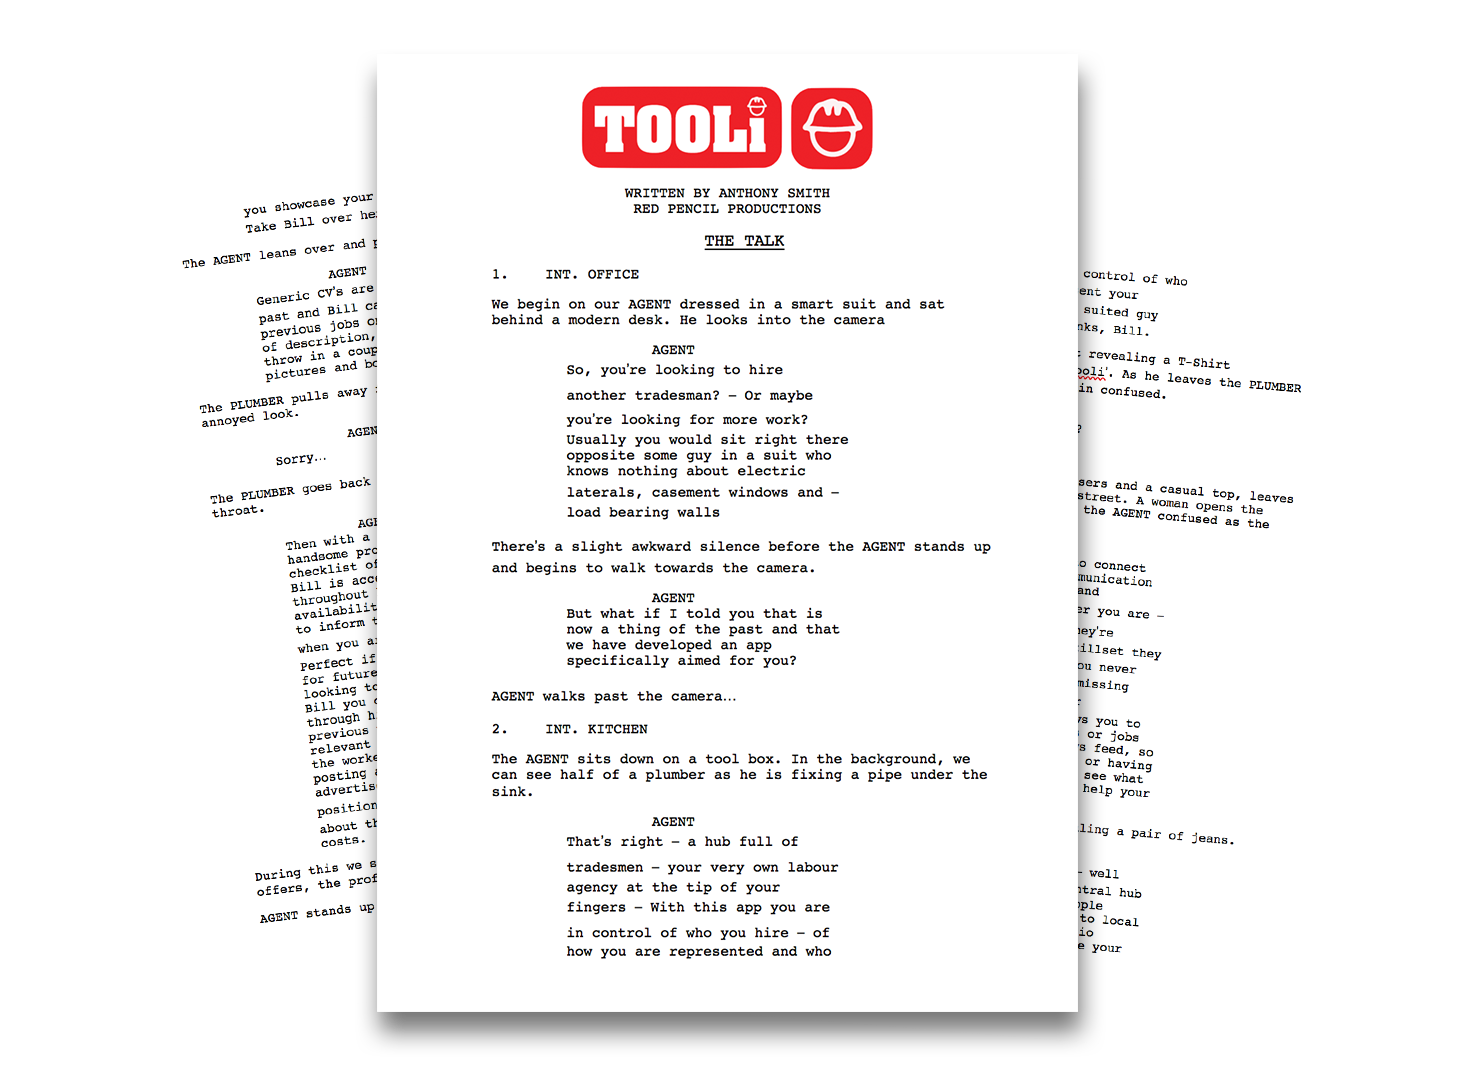 TOOLI-Script-Red-Pencil-Productions